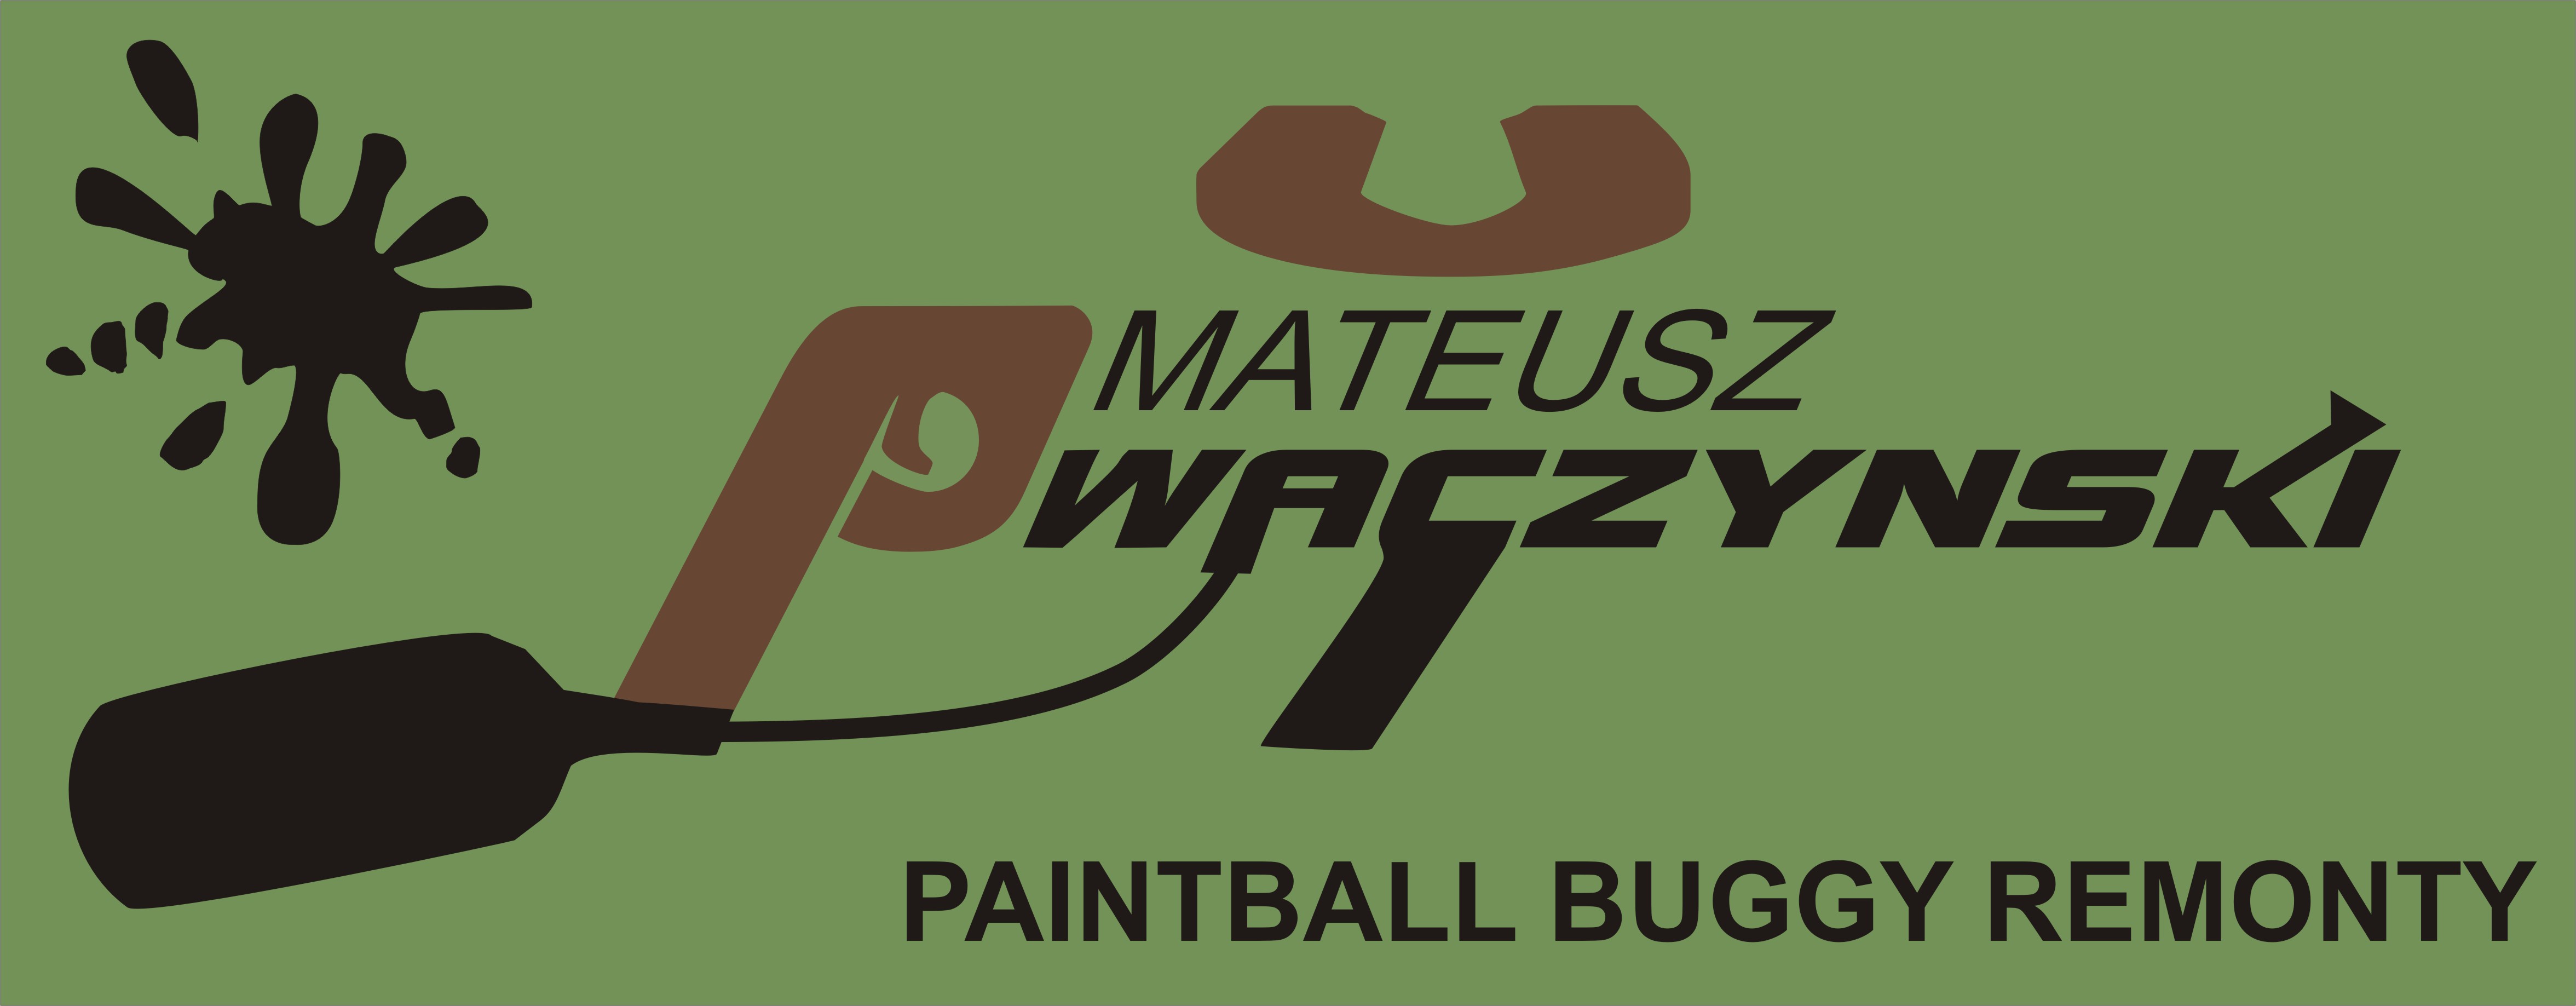 logo_pu-waczynski4